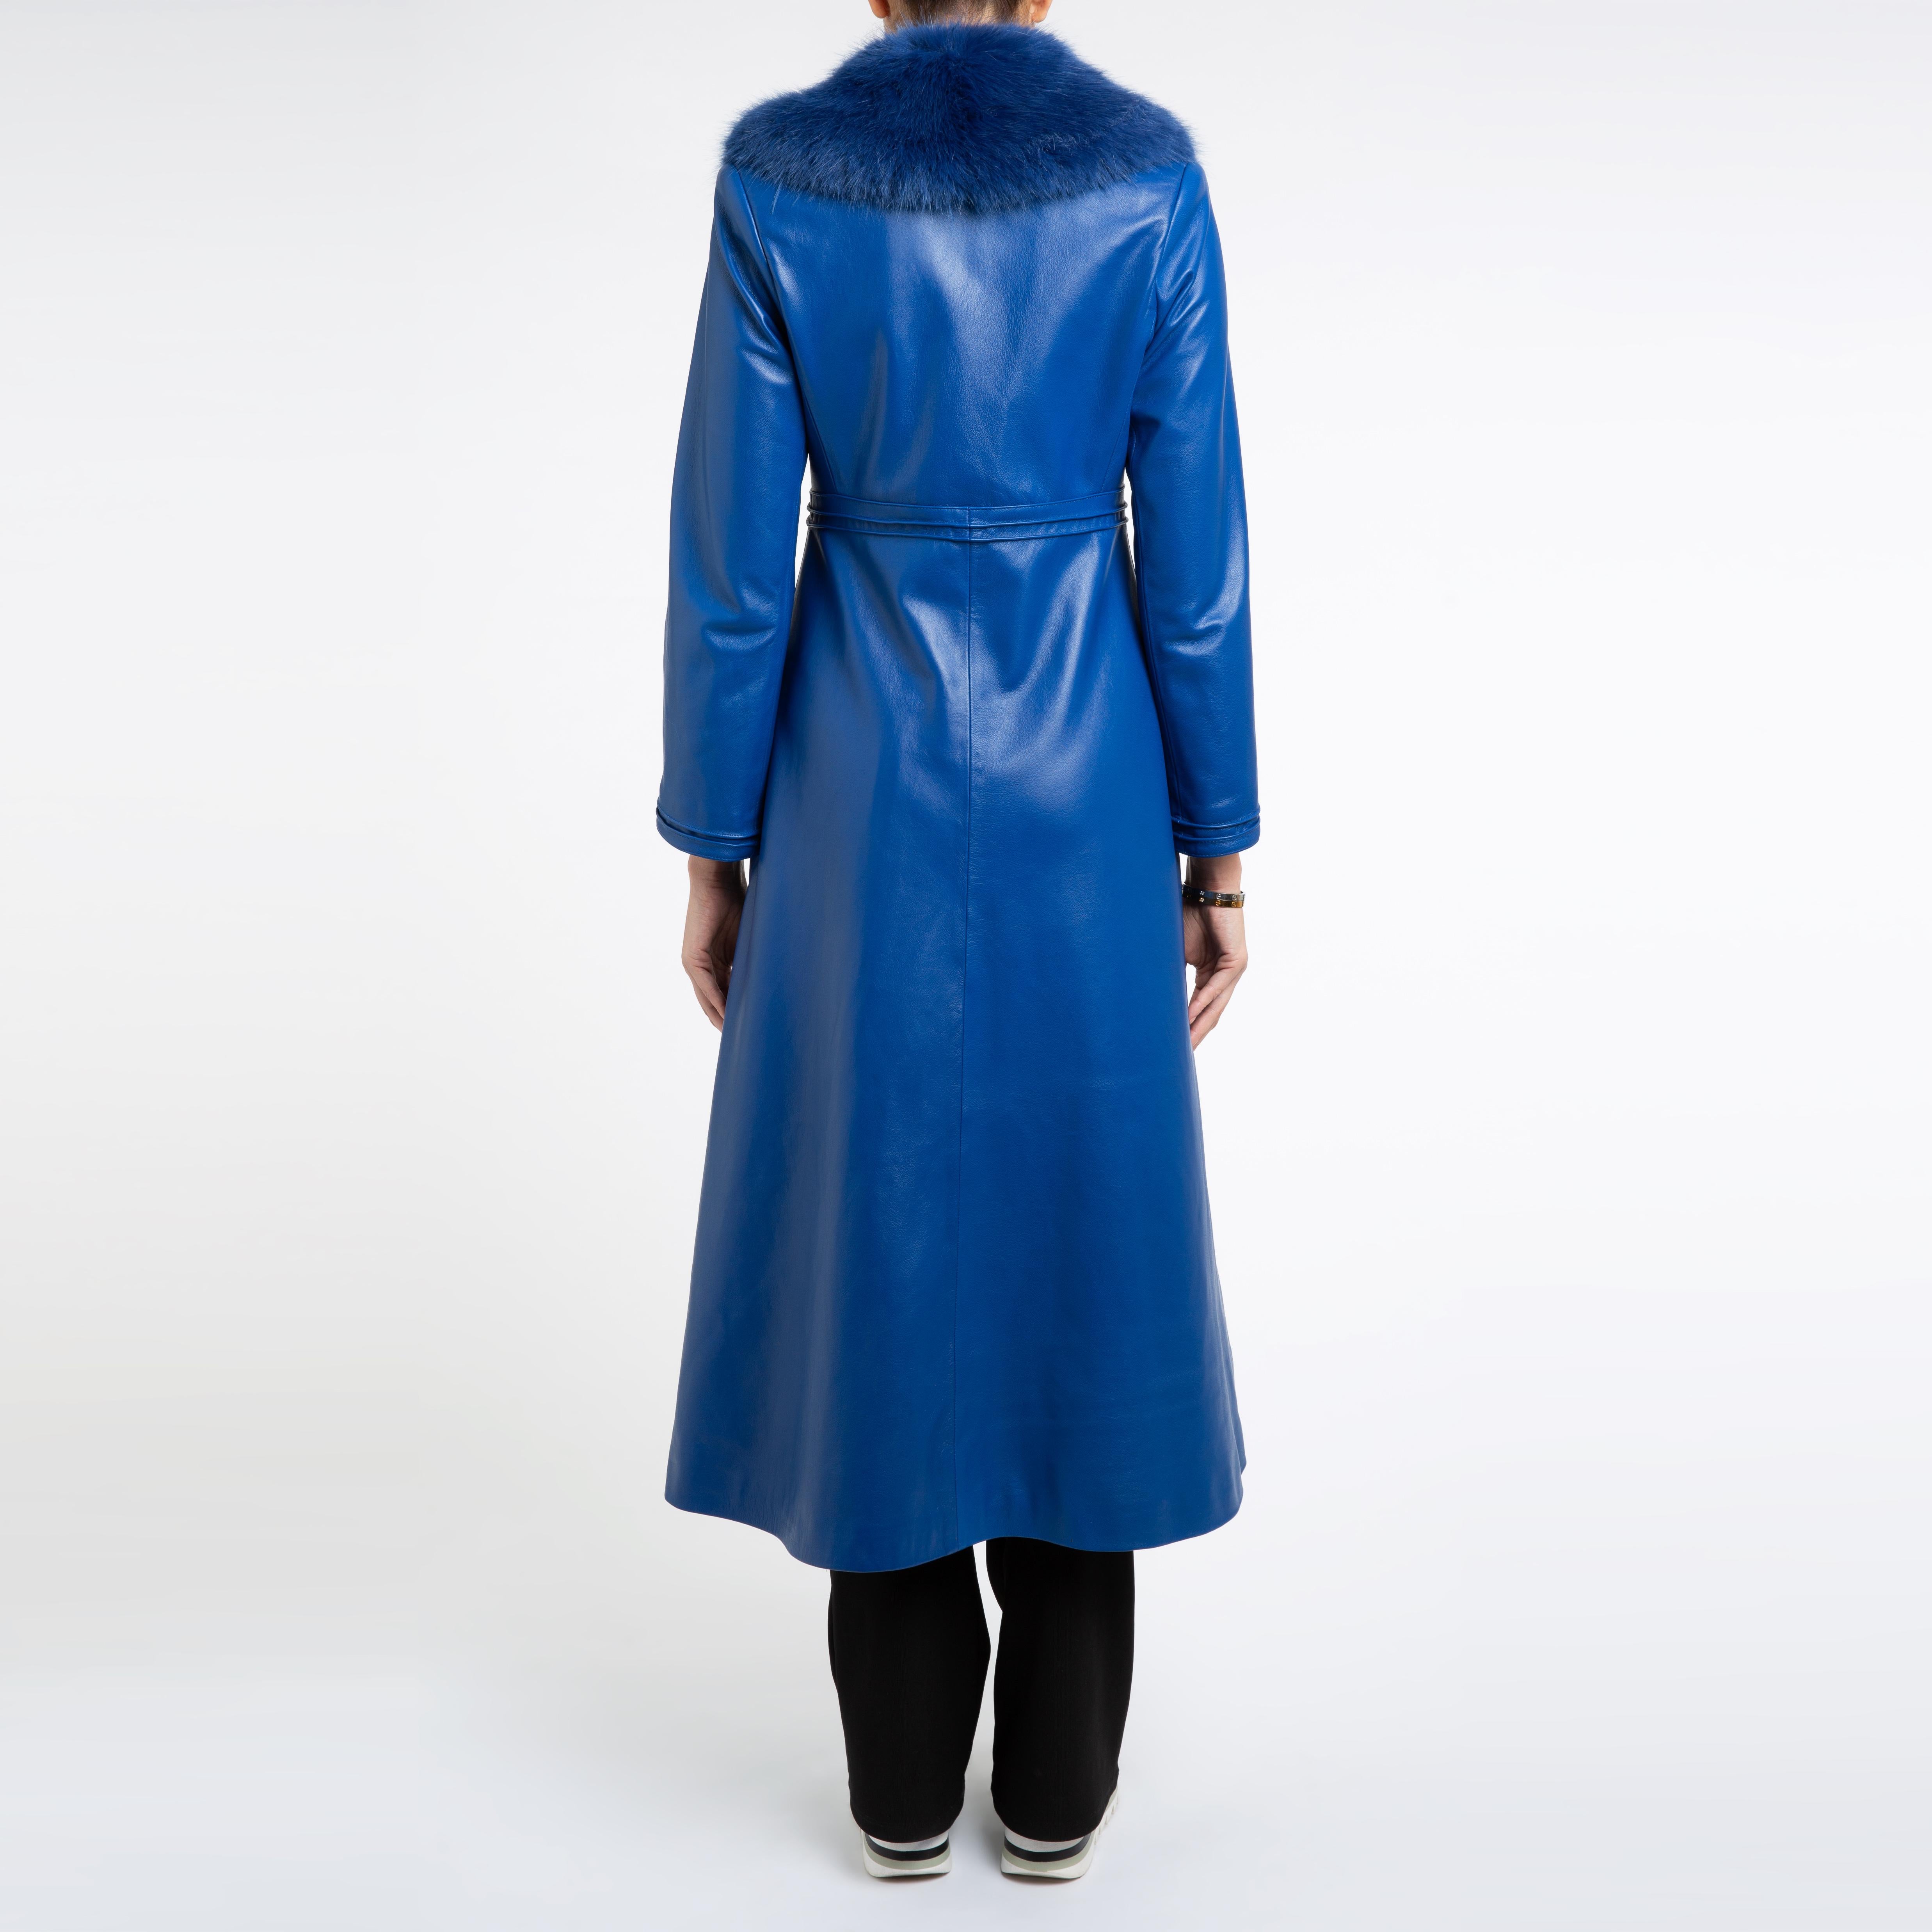 Verheyen London Edward Leather Coat in Blue with Faux Fur - Size uk 14 For Sale 1